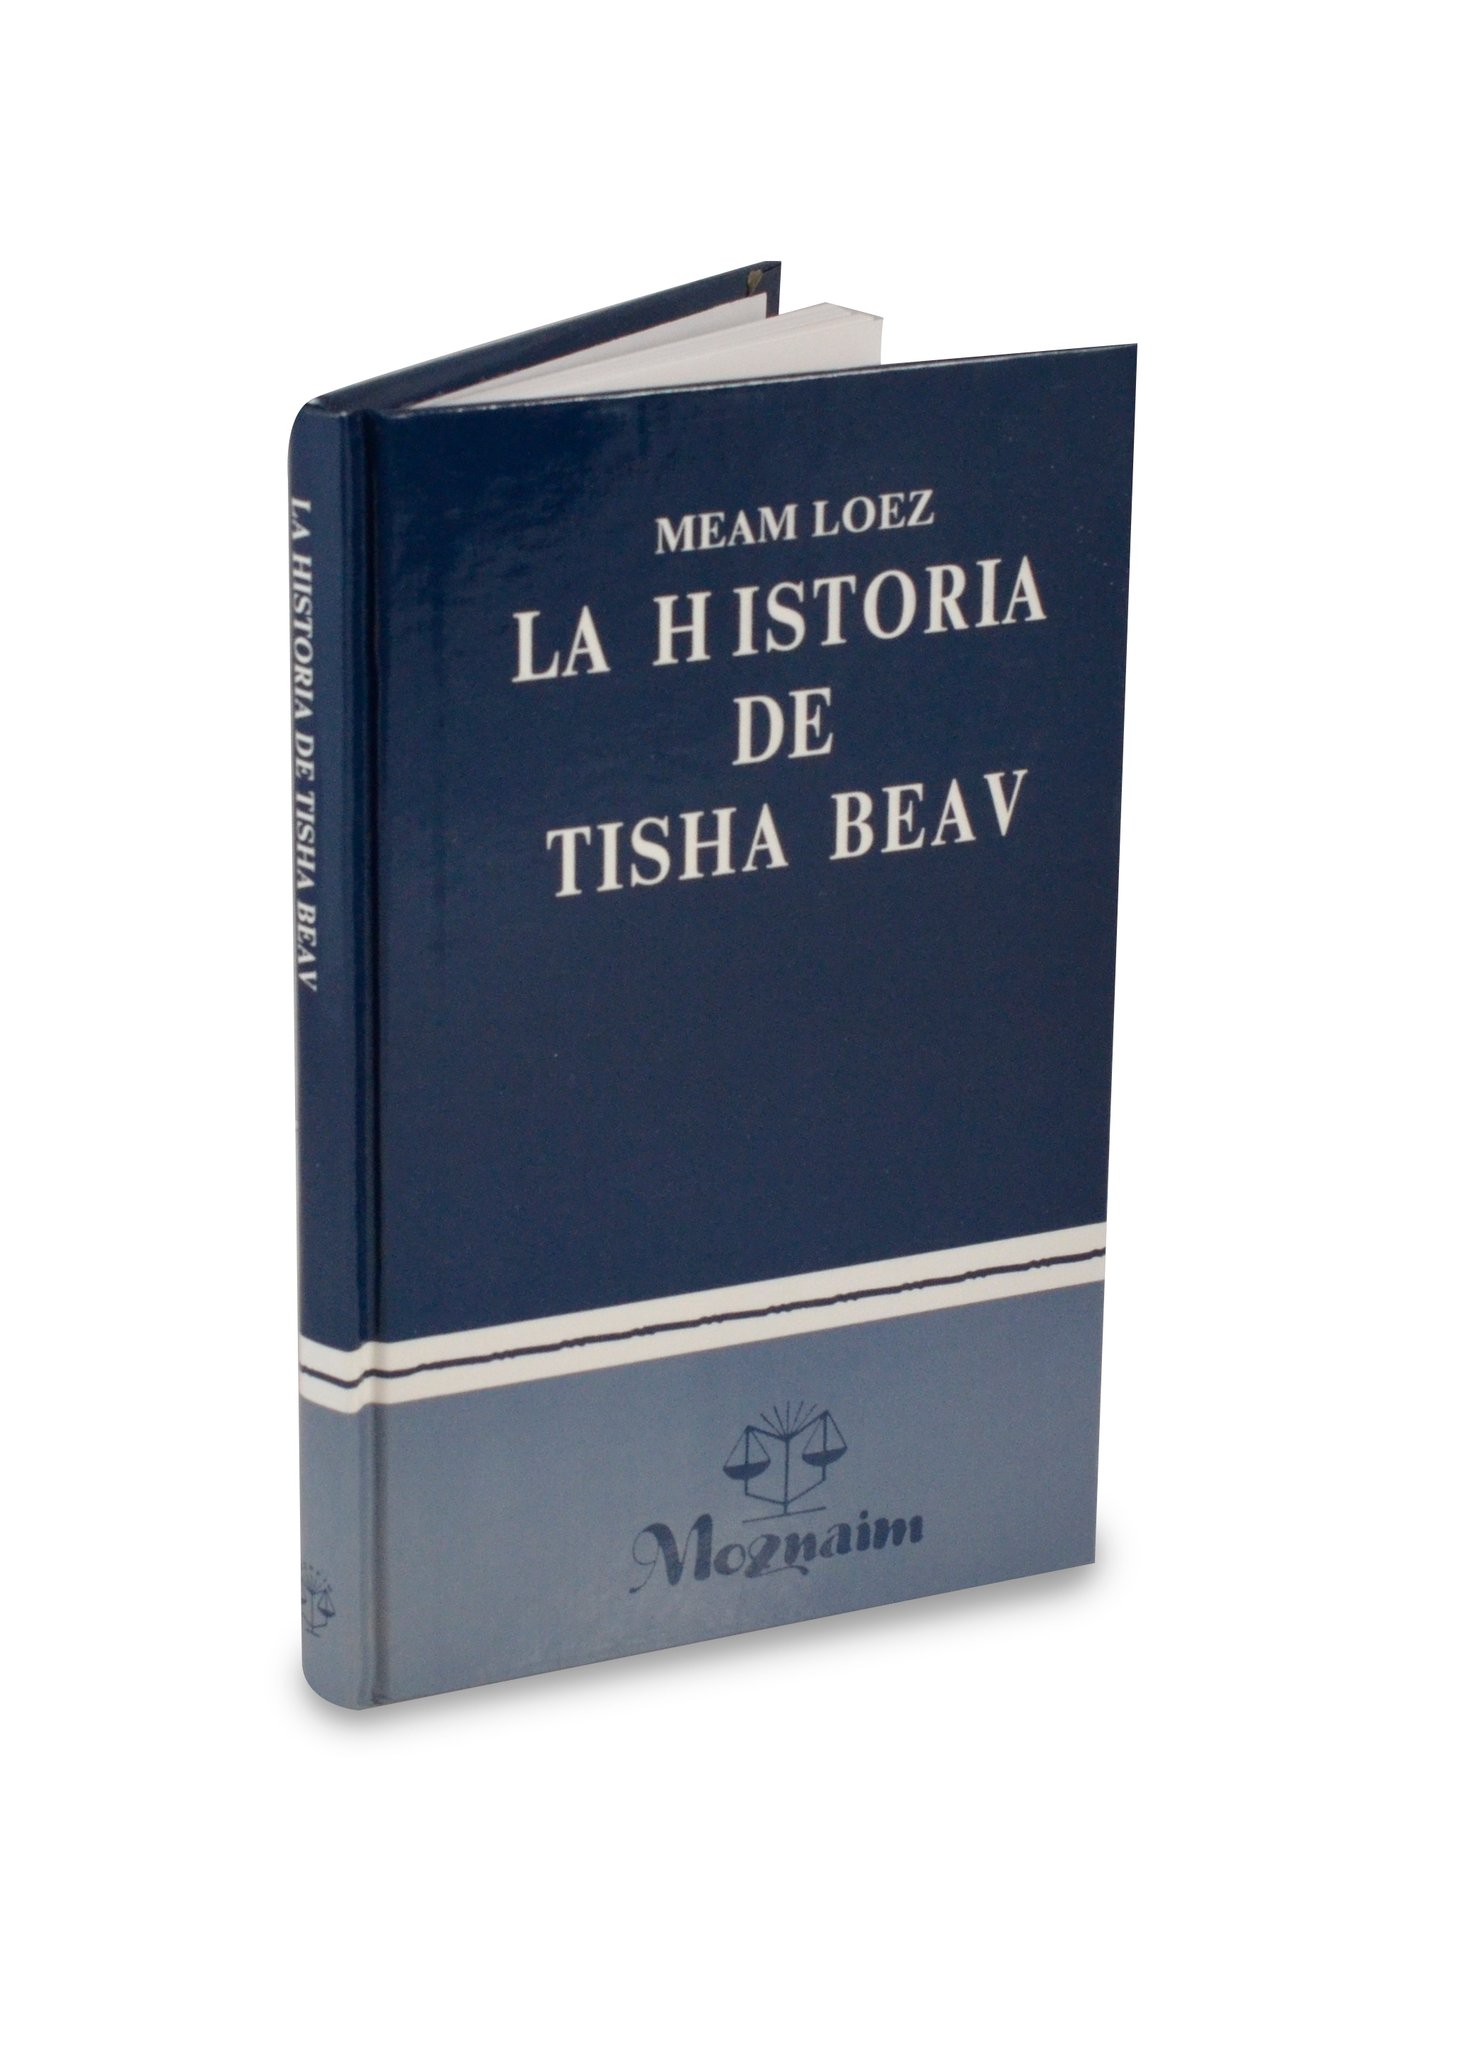 La historia de Tisha Beav (meam loéz)